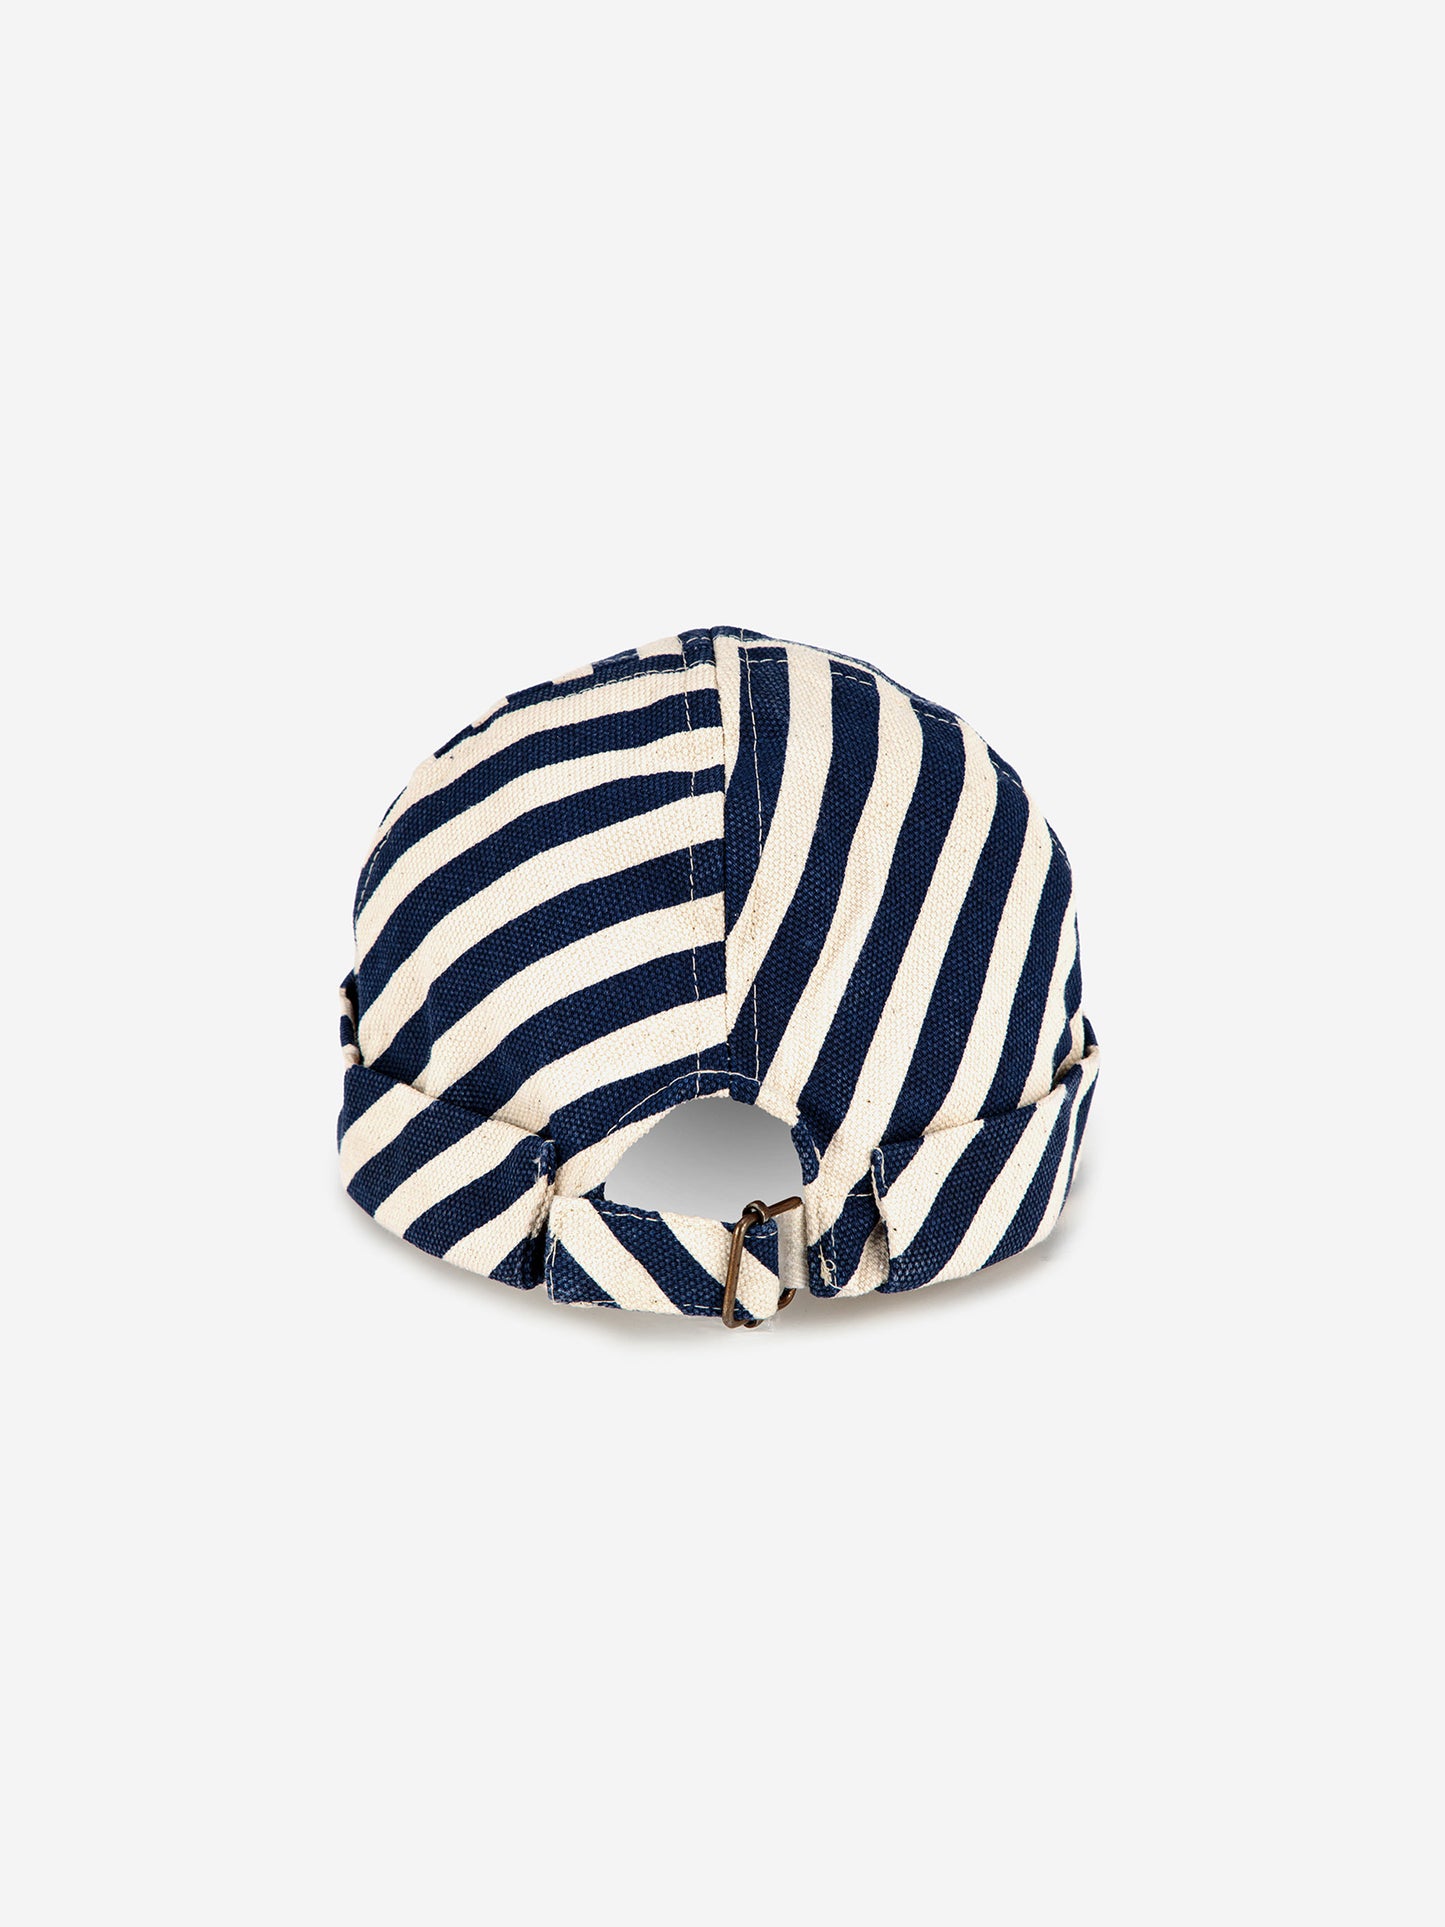 Blue Stripes round hat